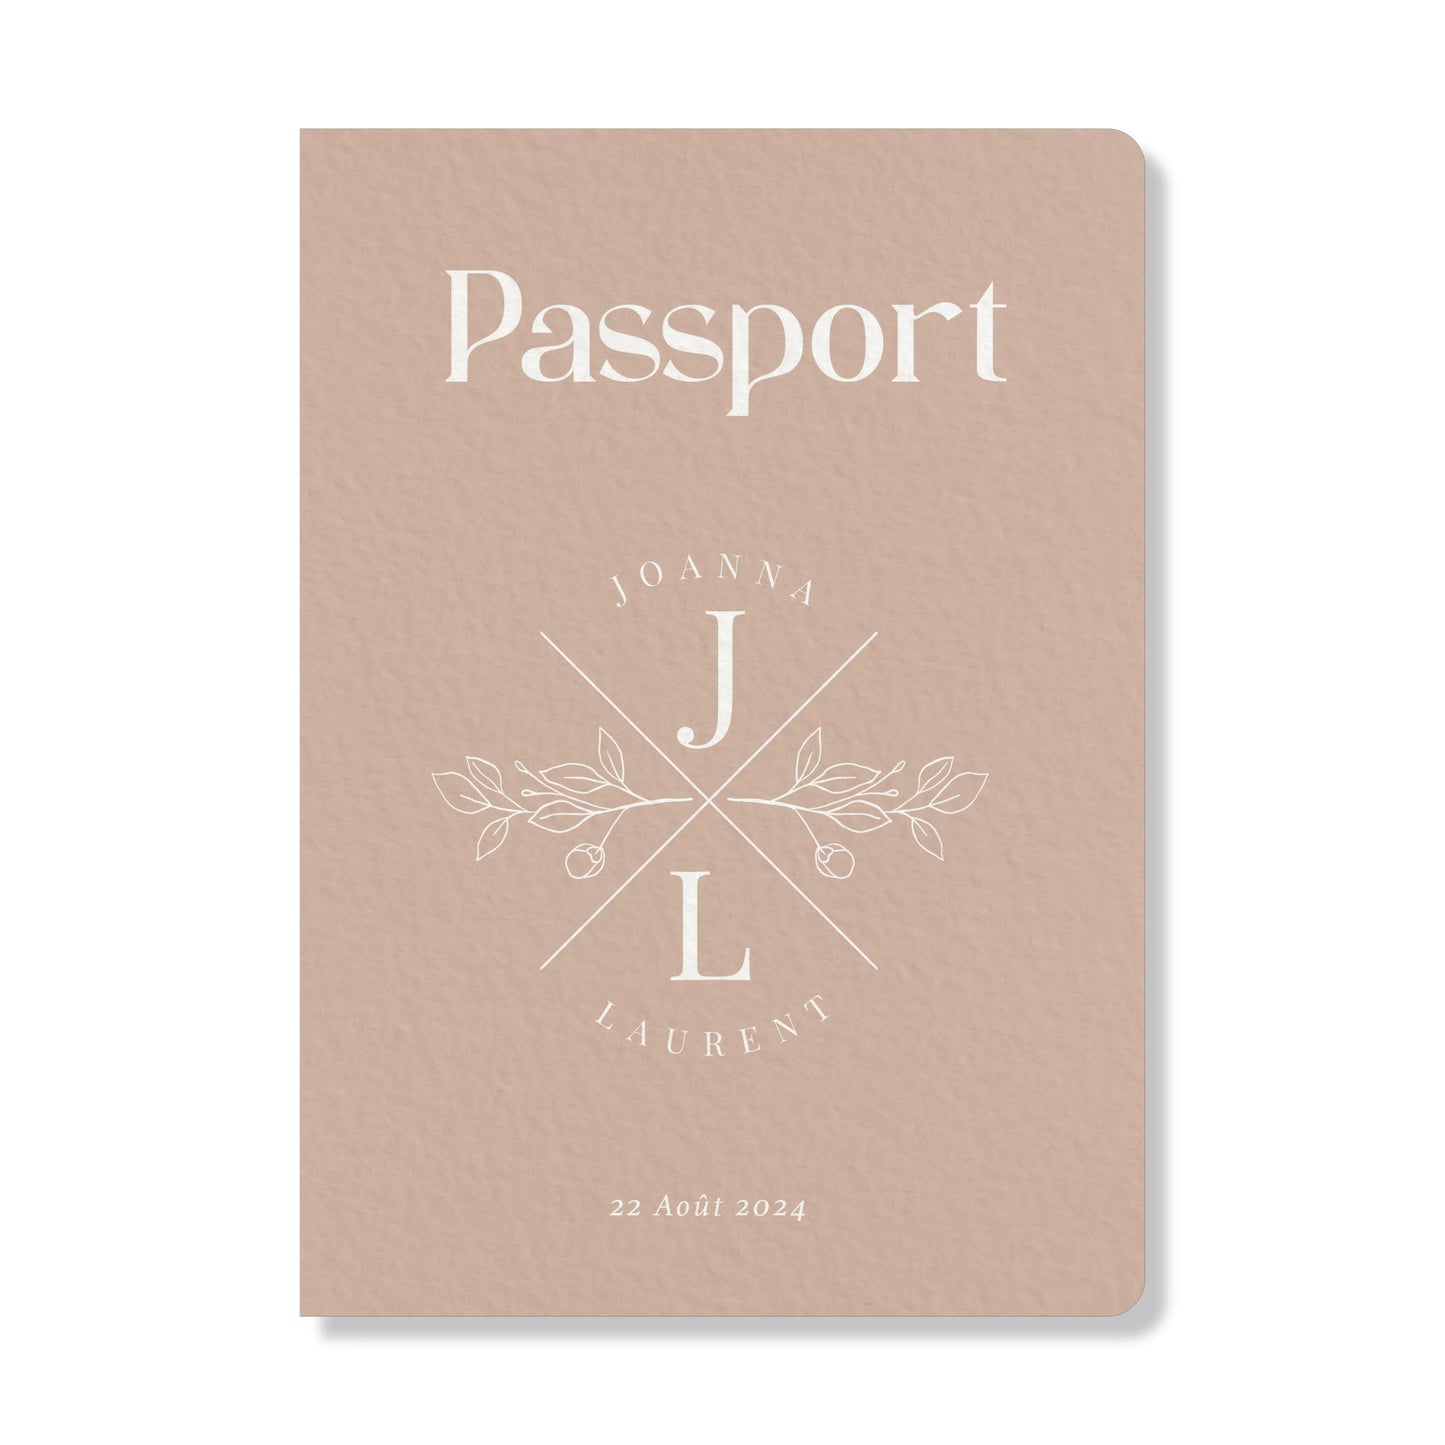 PACK faire-part passport + carton billet d'avion, rose pâle